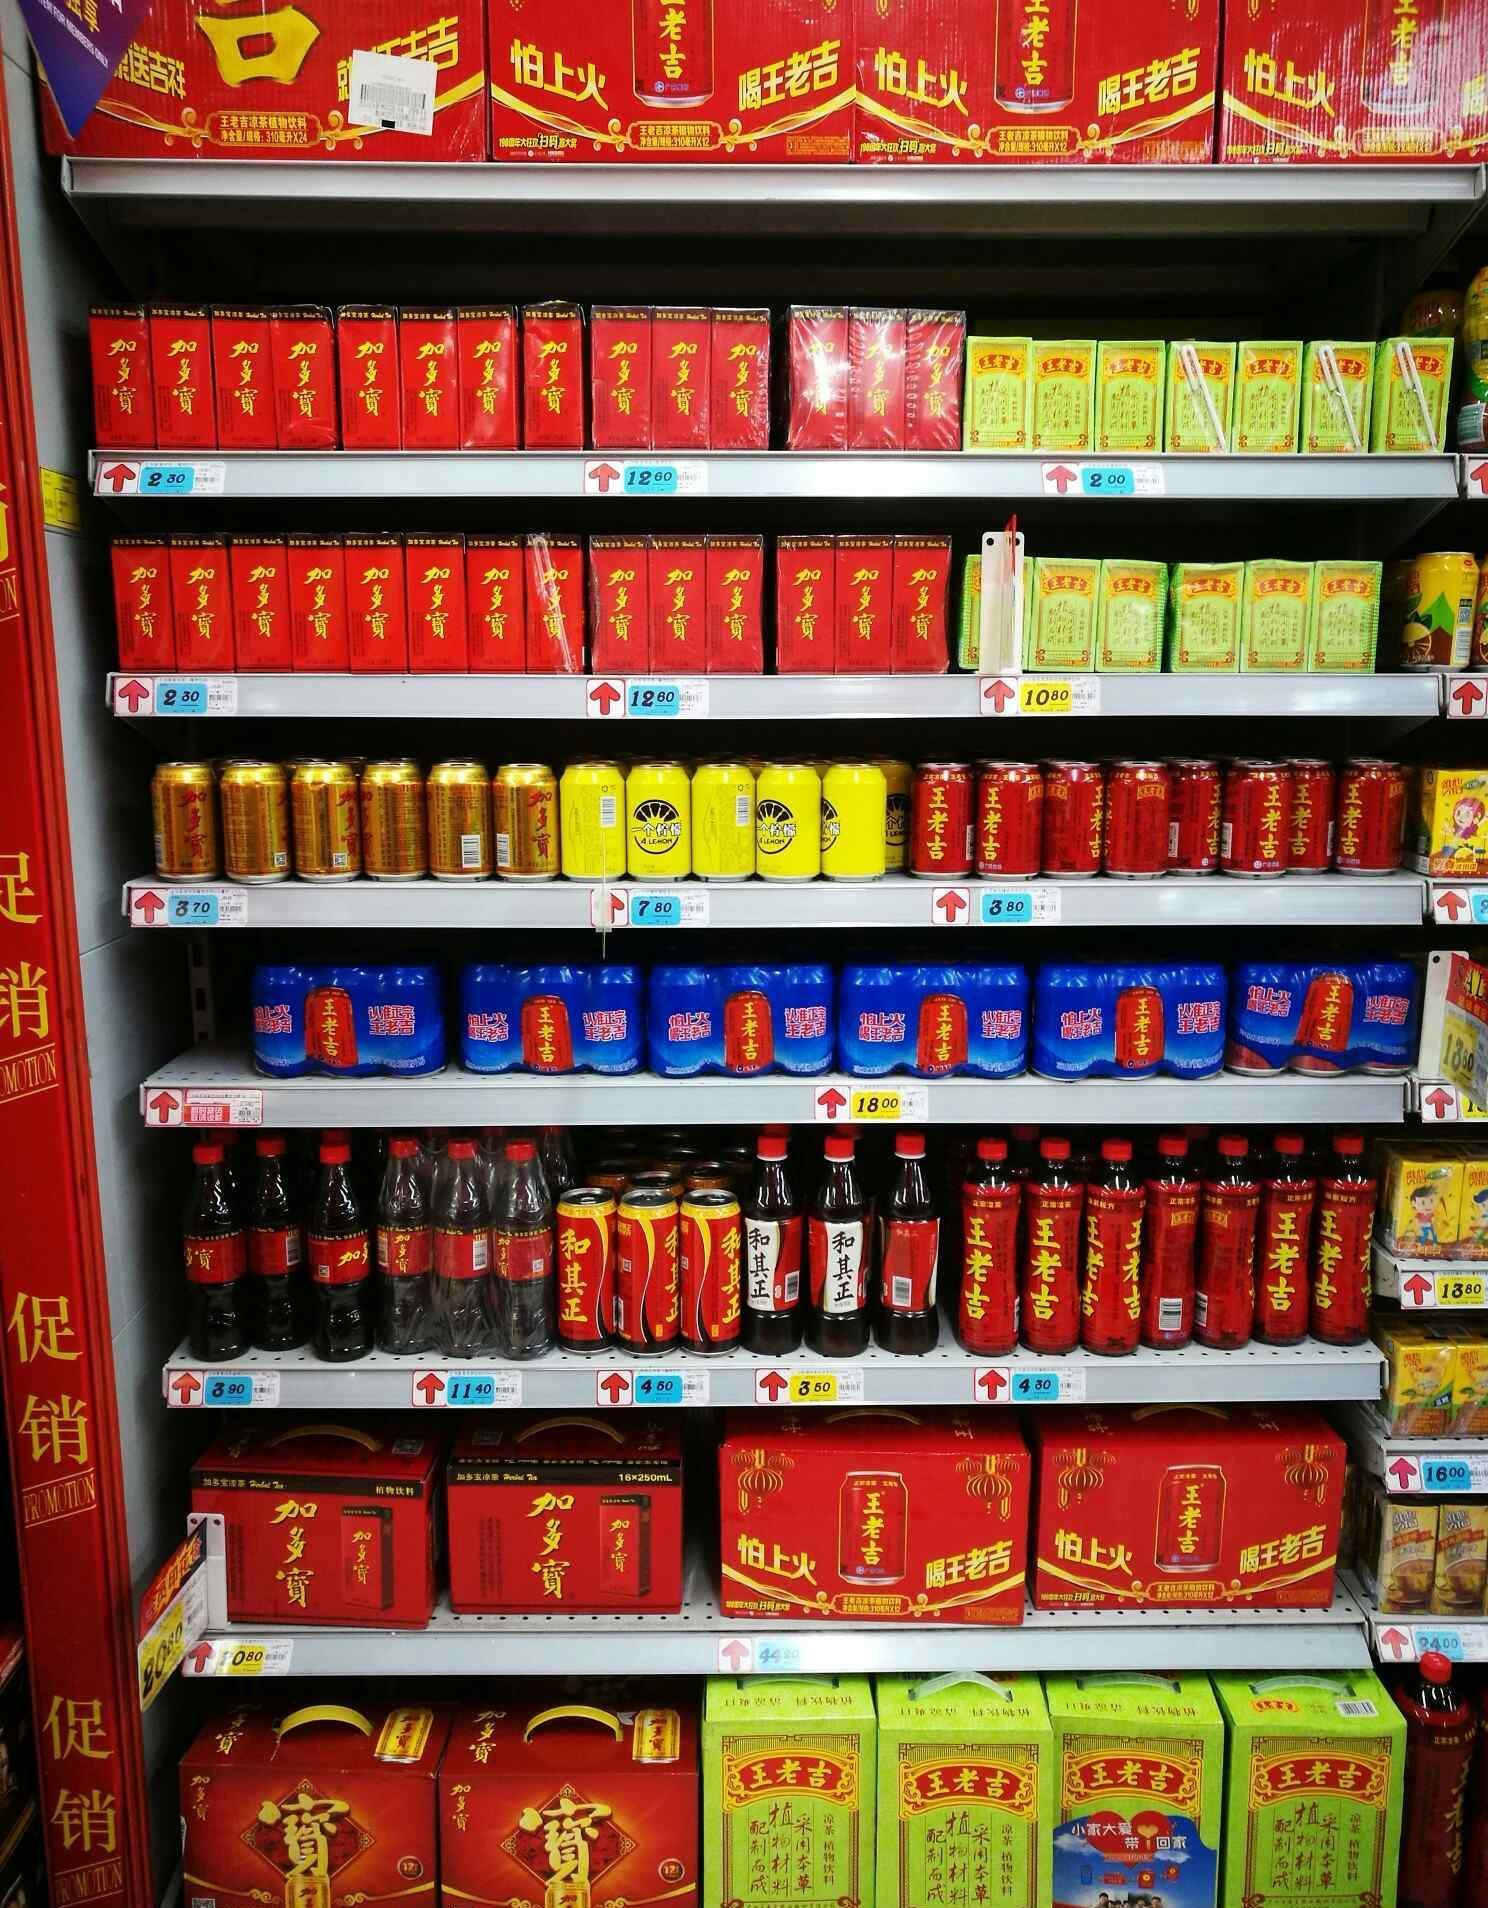 今天刚刚在超市金润发拍摄的,王老吉占的面积大,问营销人员,说买